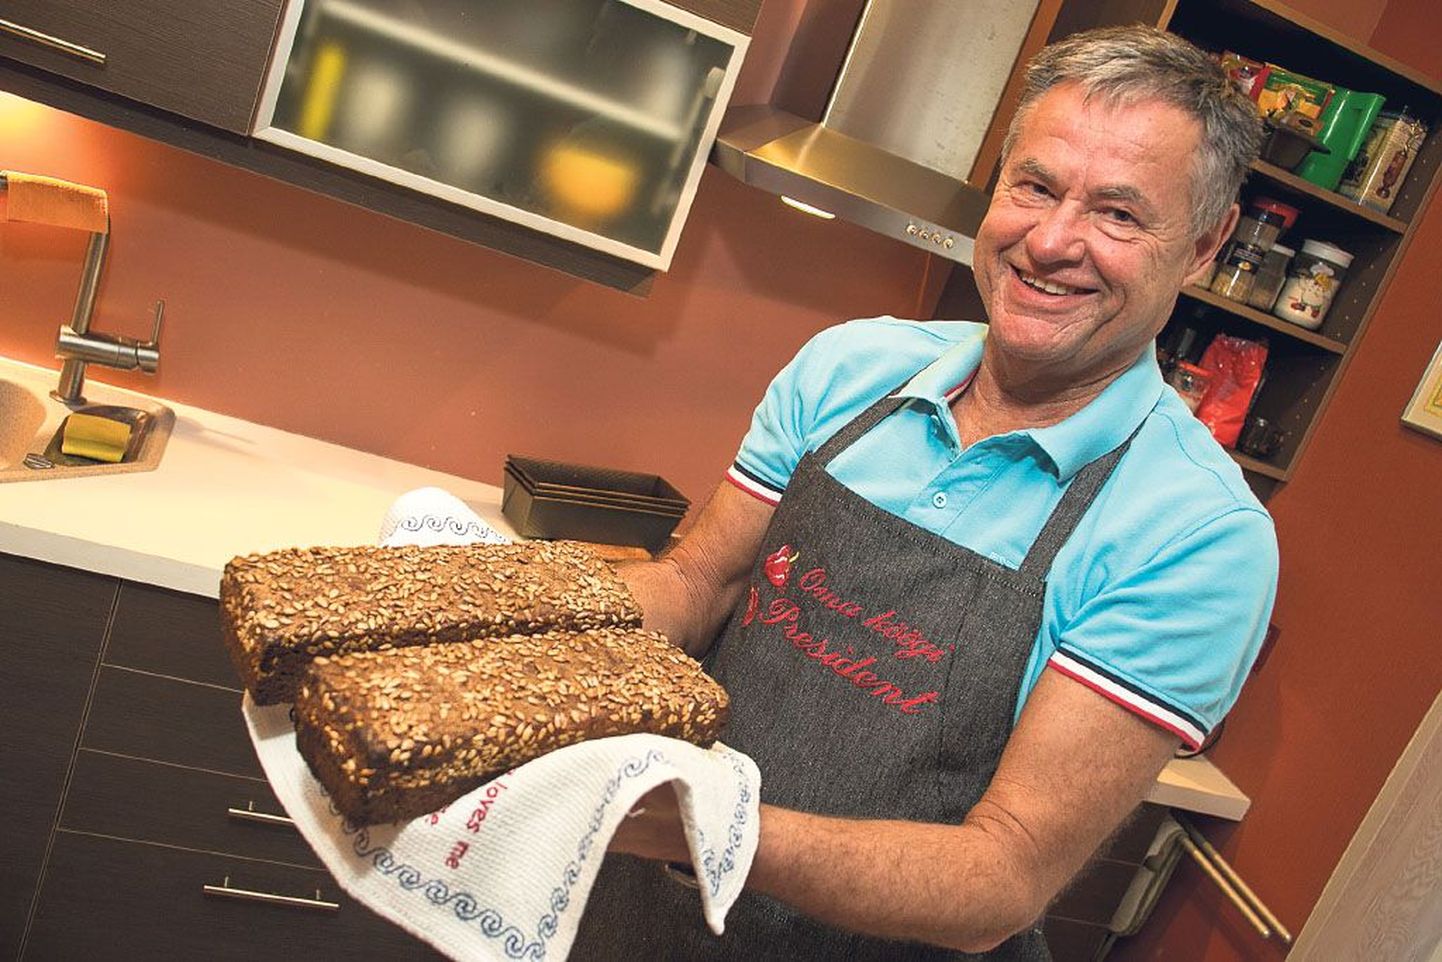 Leivaküpsetamine on Allan Toodole mõnus hobi, mille tulemusega oma sõpru ja lähedasi rõõmustada.